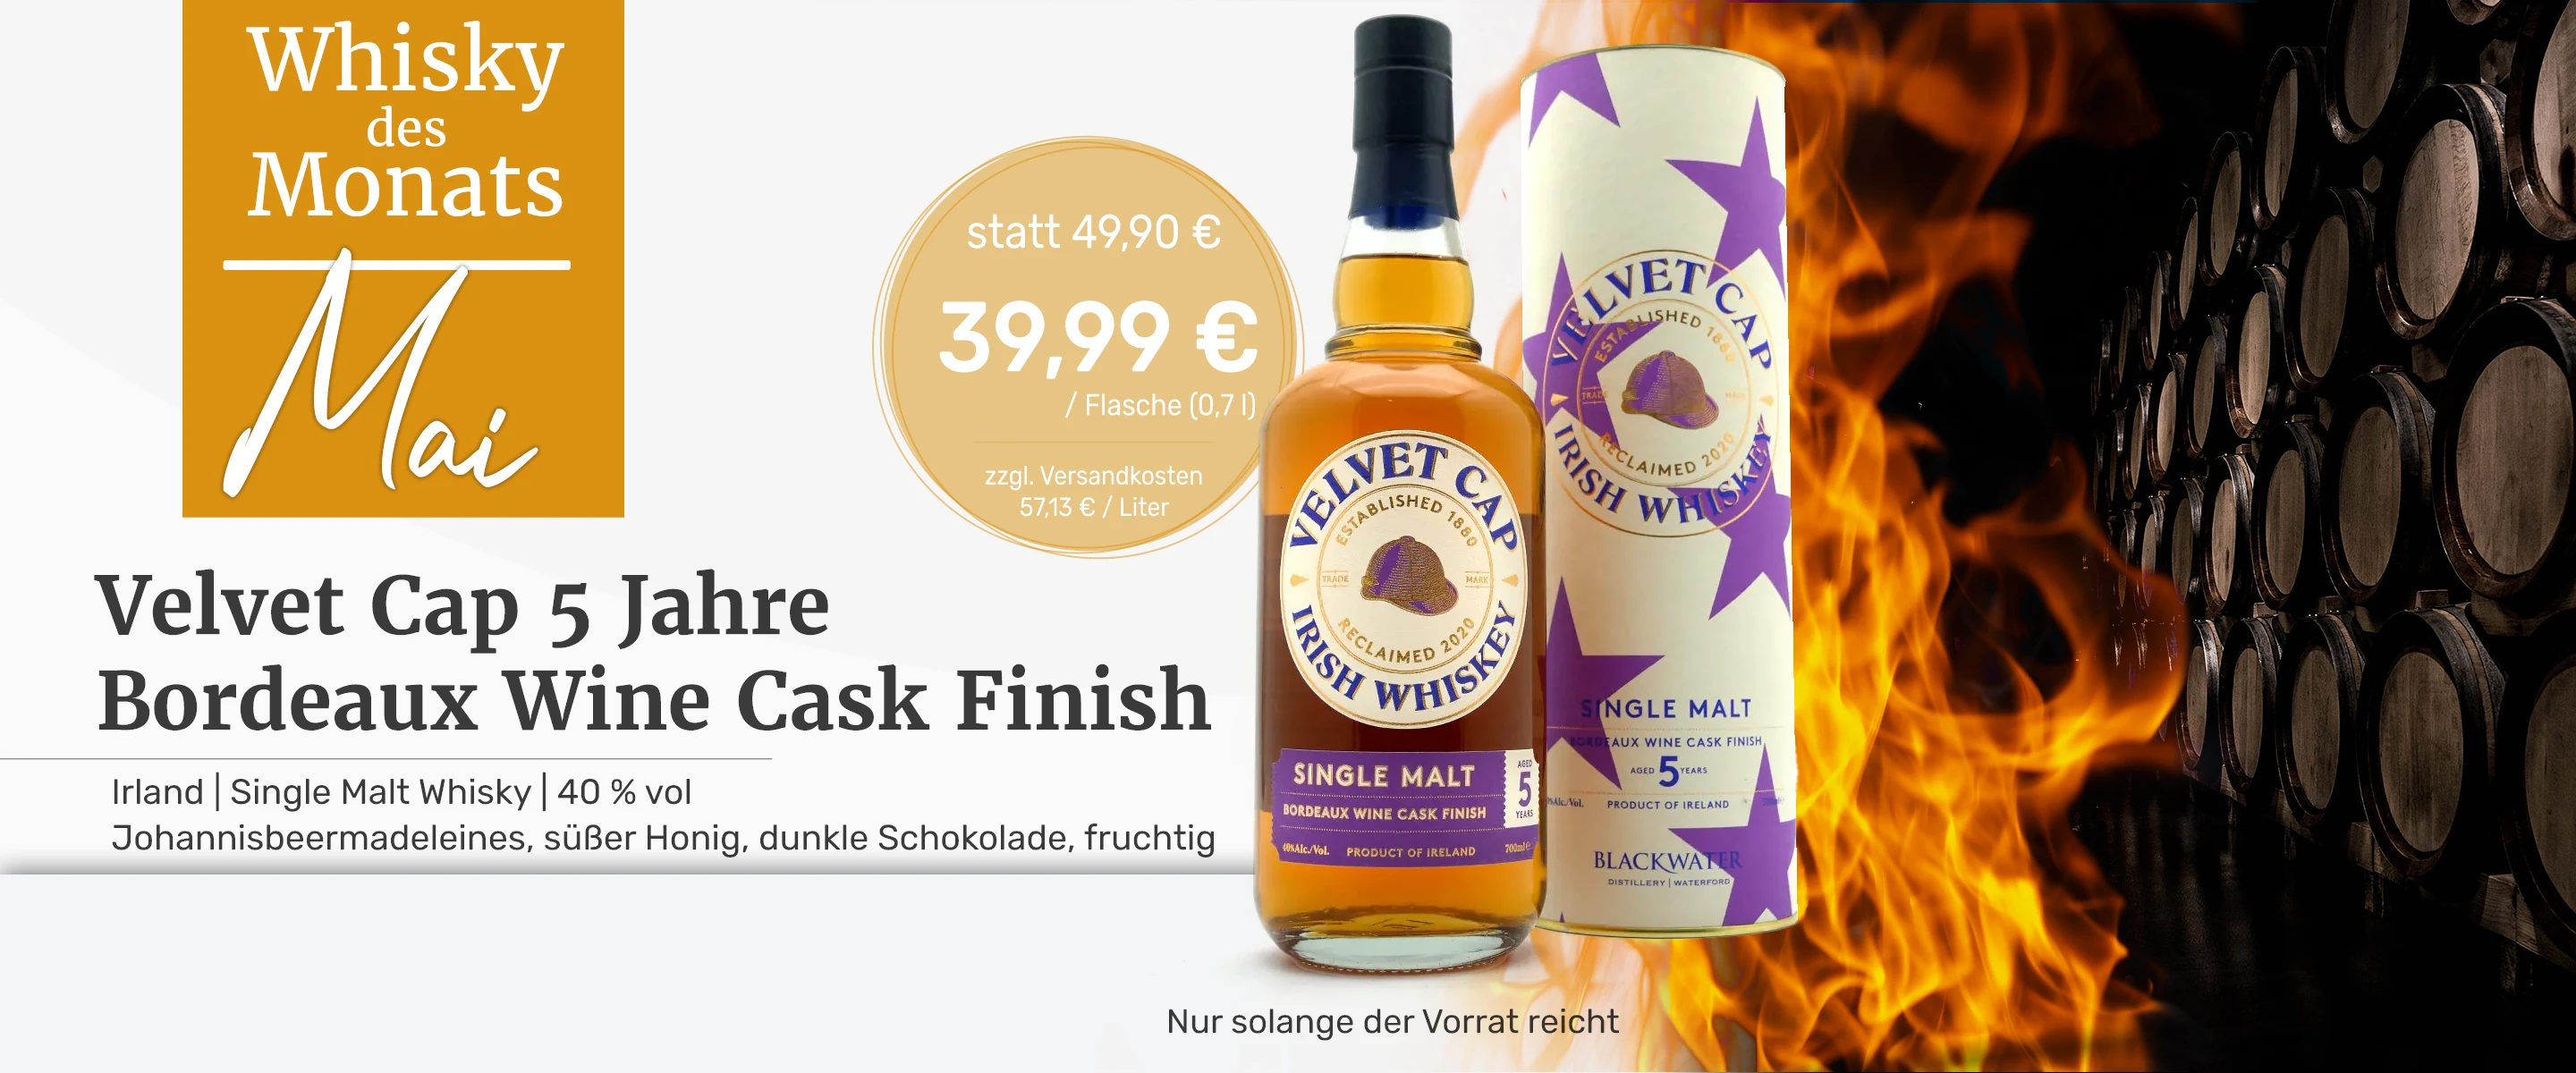 Whisky_des_Monats_Mai_Velvet_Cap_5_Jahre_Bodeaux_Finish-10113